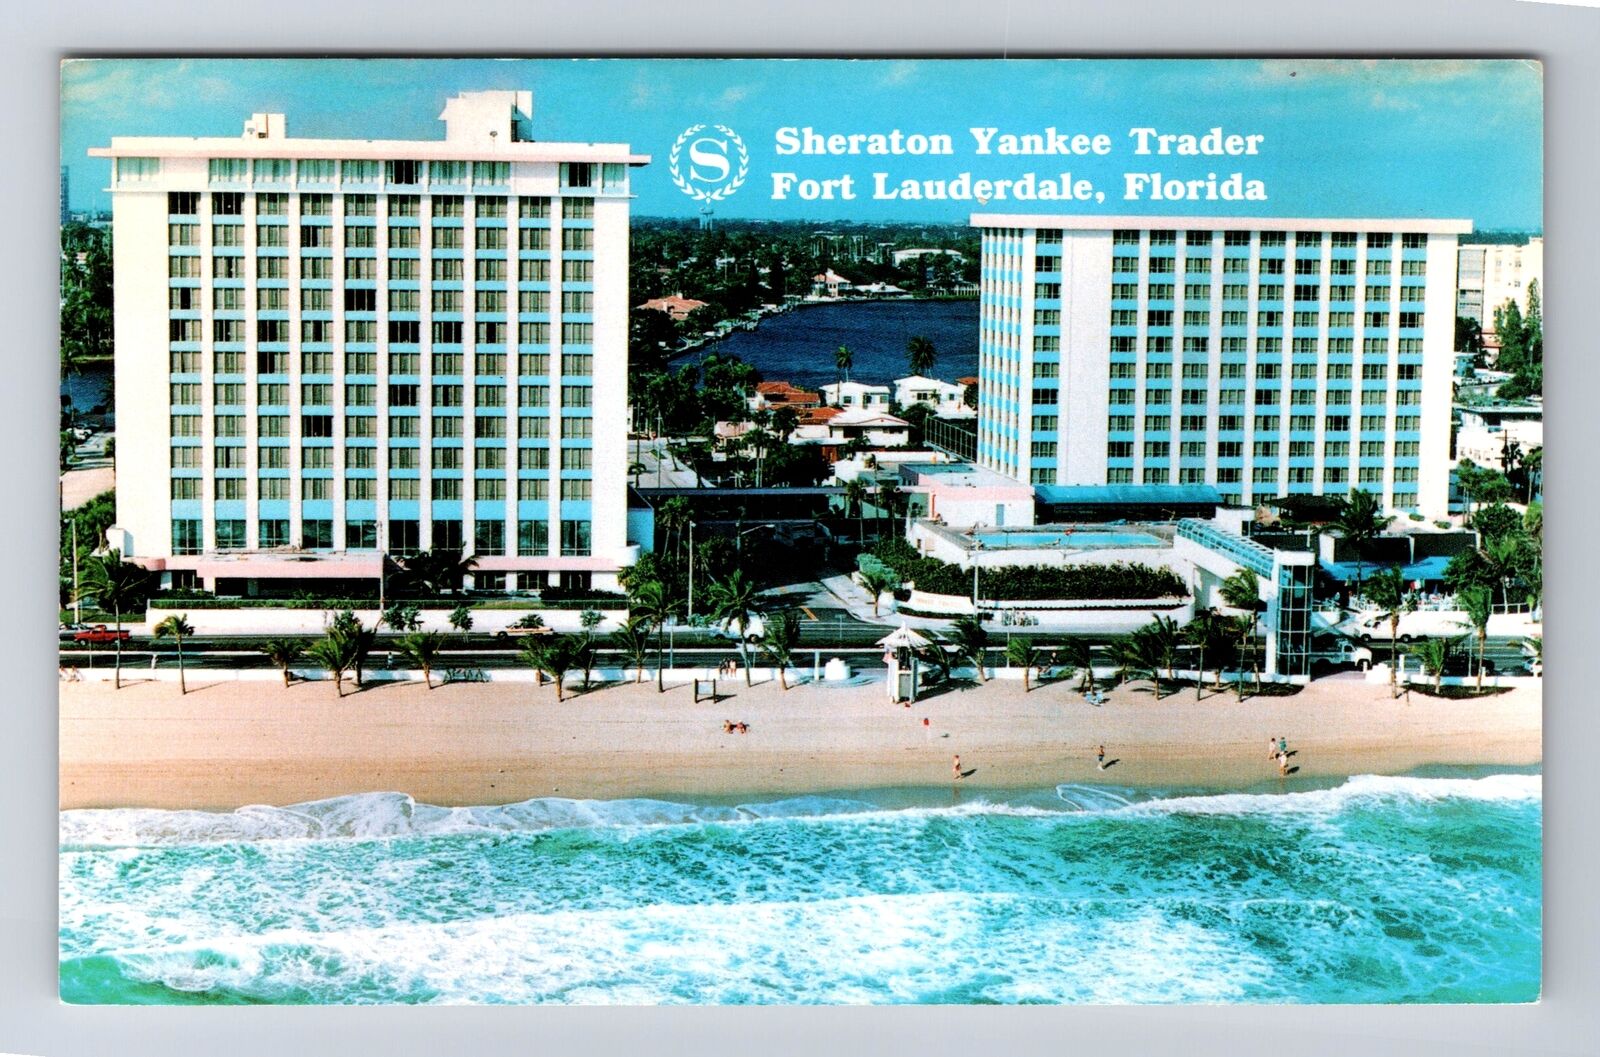 Fort Lauderdale FL- Florida, Sheraton Yankee Trader, Advertise, Vintage Postcard